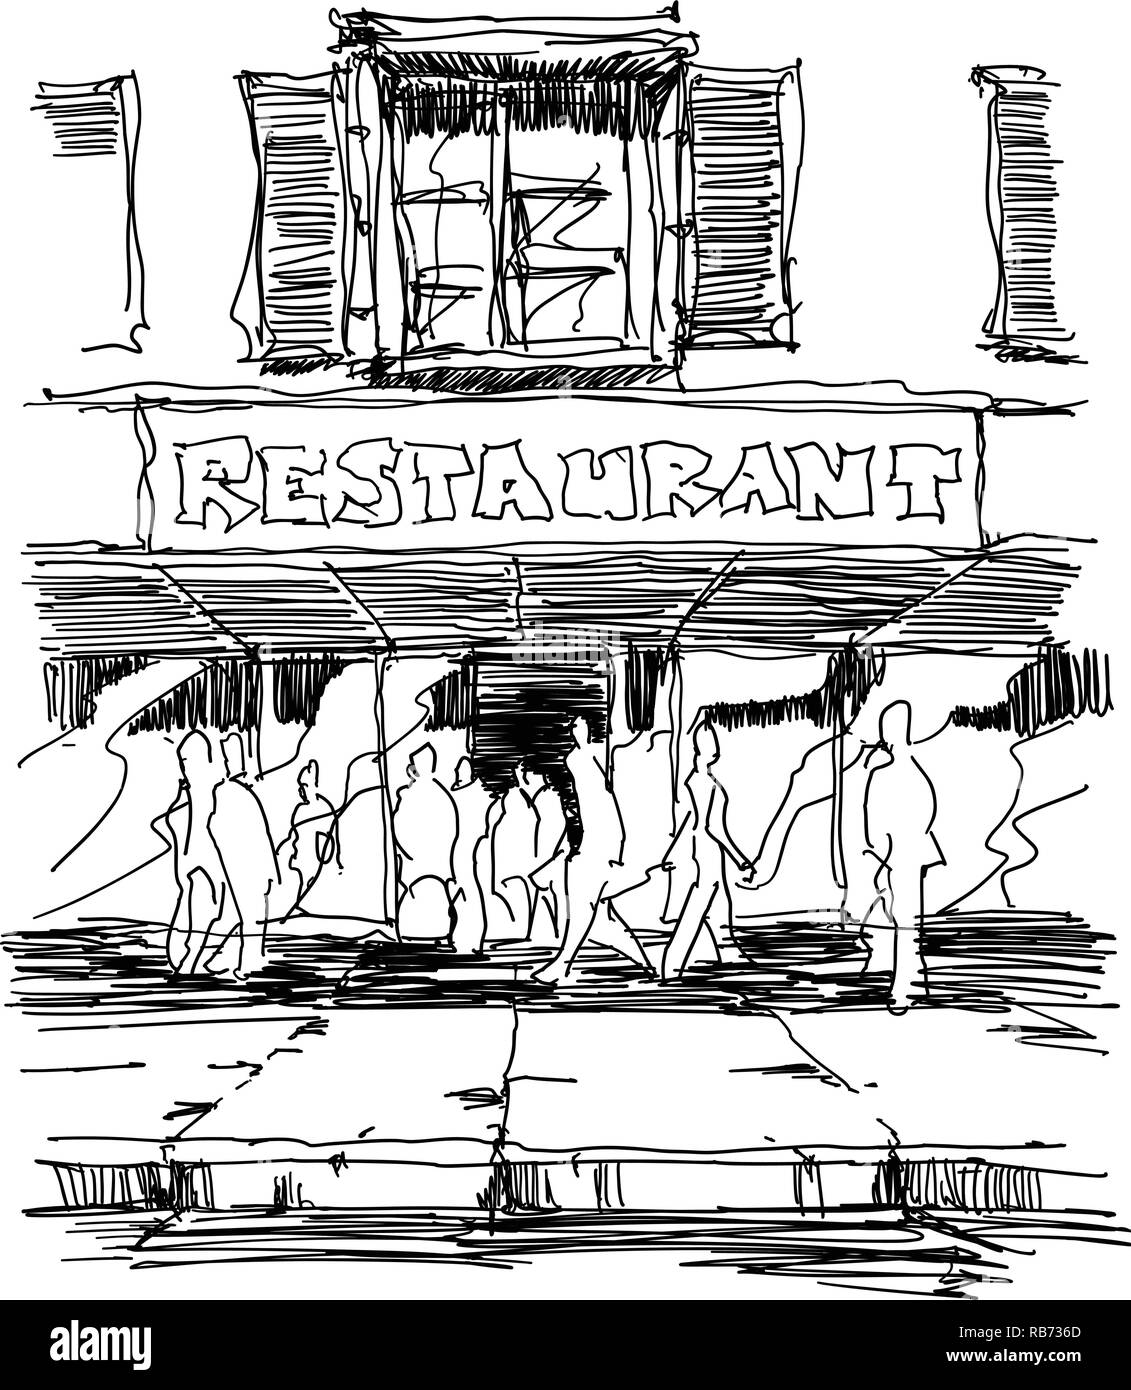 Croquis Dibujados A Mano De Entrada A Un Restaurante Situado En La Calle Con Mucha Gente 